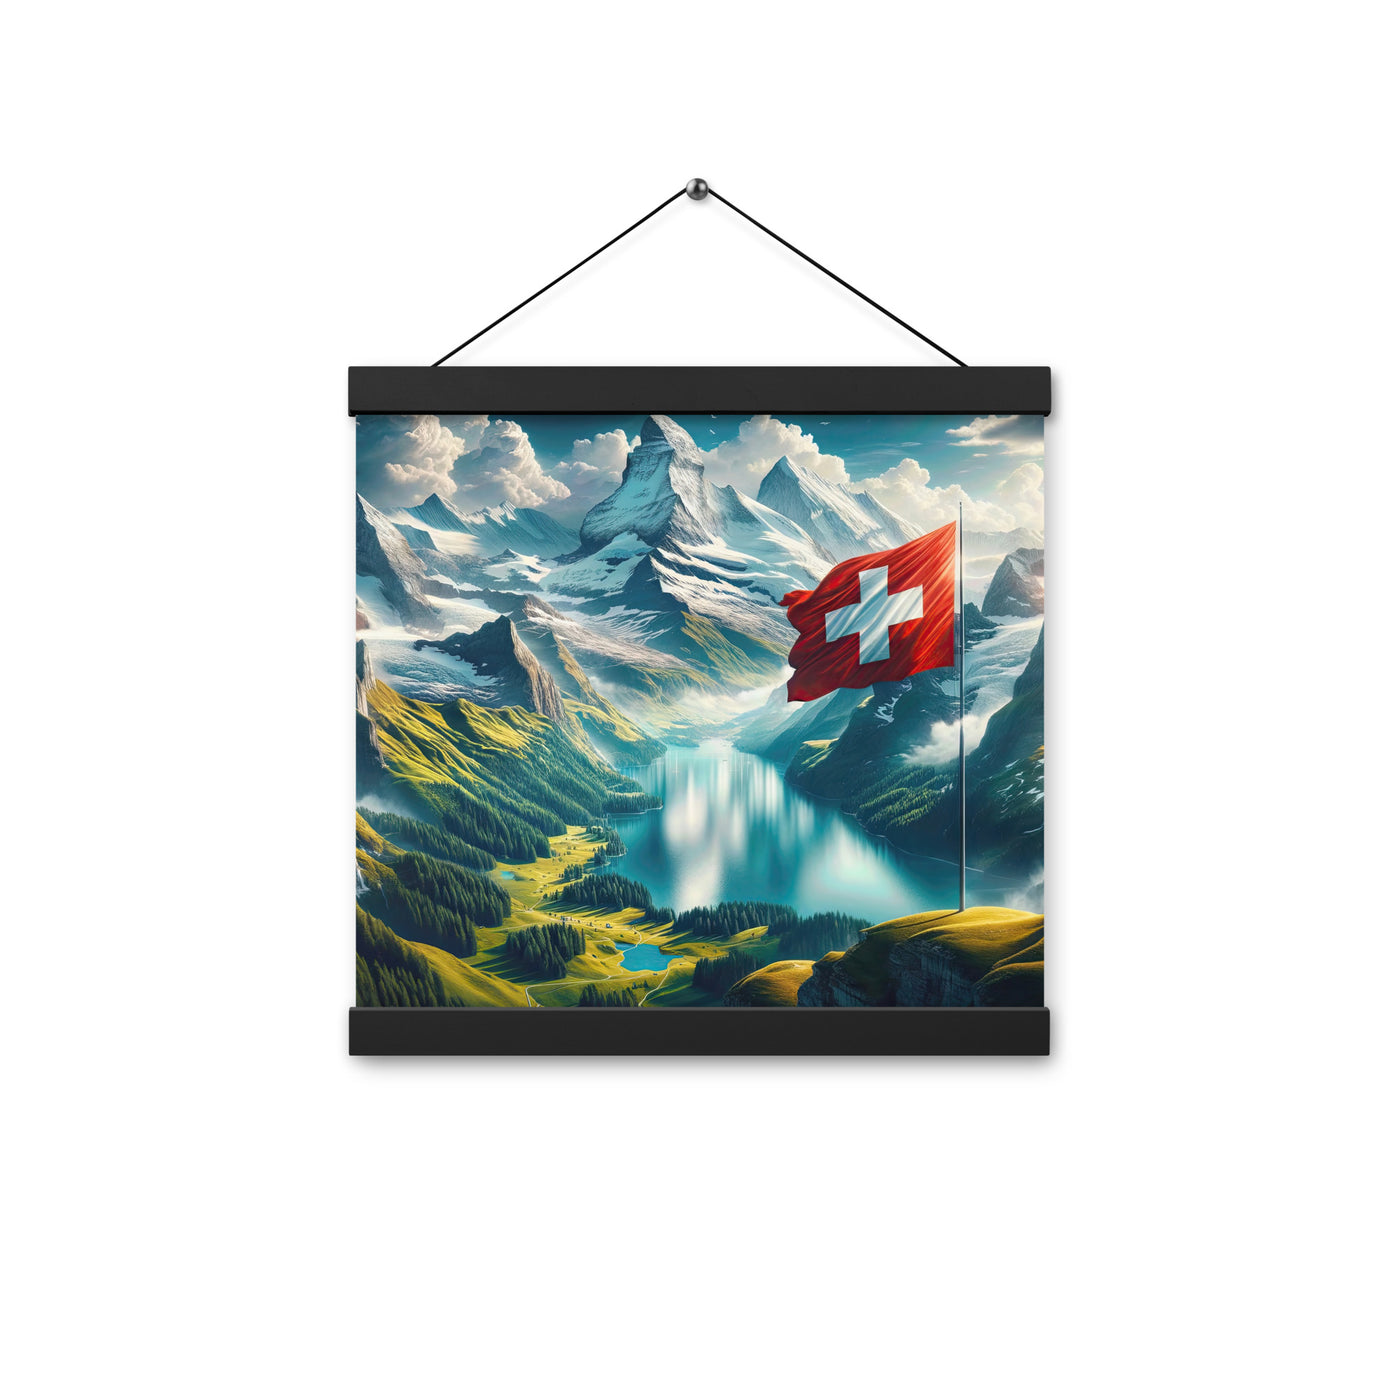 Ultraepische, fotorealistische Darstellung der Schweizer Alpenlandschaft mit Schweizer Flagge - Enhanced Matte Paper Poster With Hanger berge xxx yyy zzz 30.5 x 30.5 cm